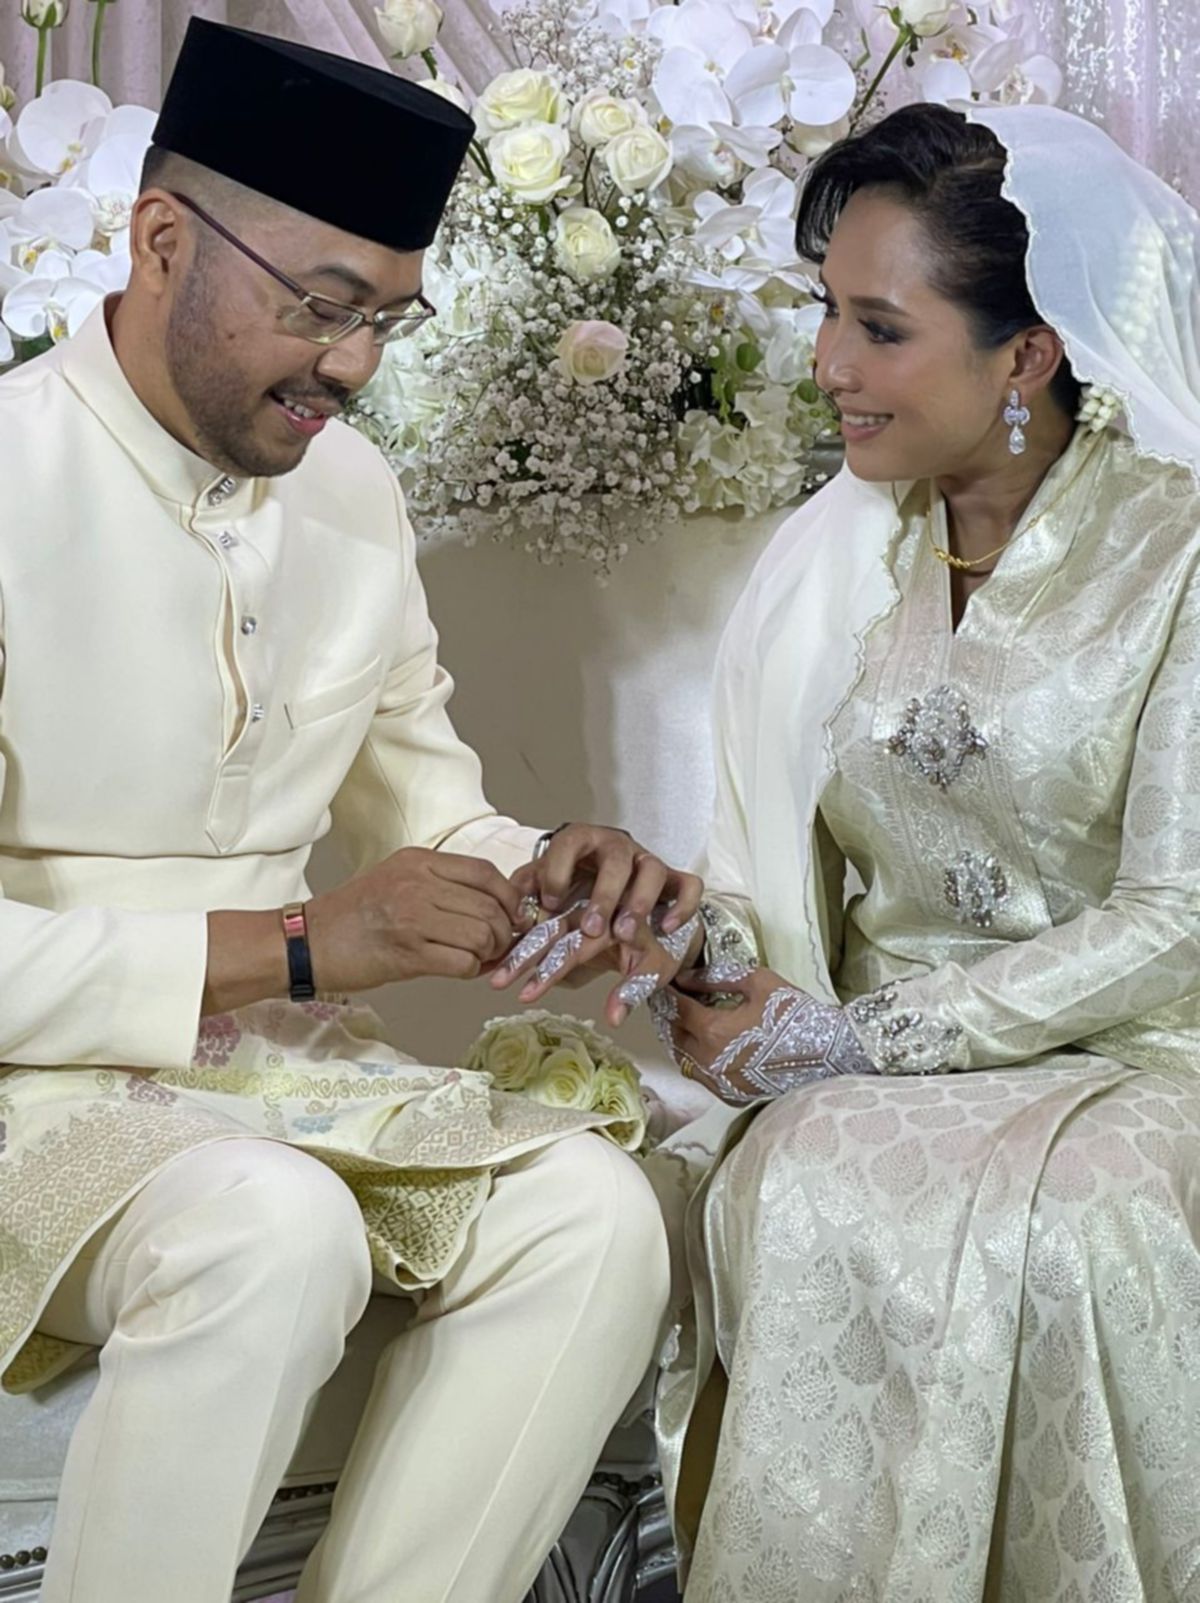 Vanidah Iman dan Arifabillah melangsungkan pernikahan hari ini. Foto: @luxurycapturephotography 